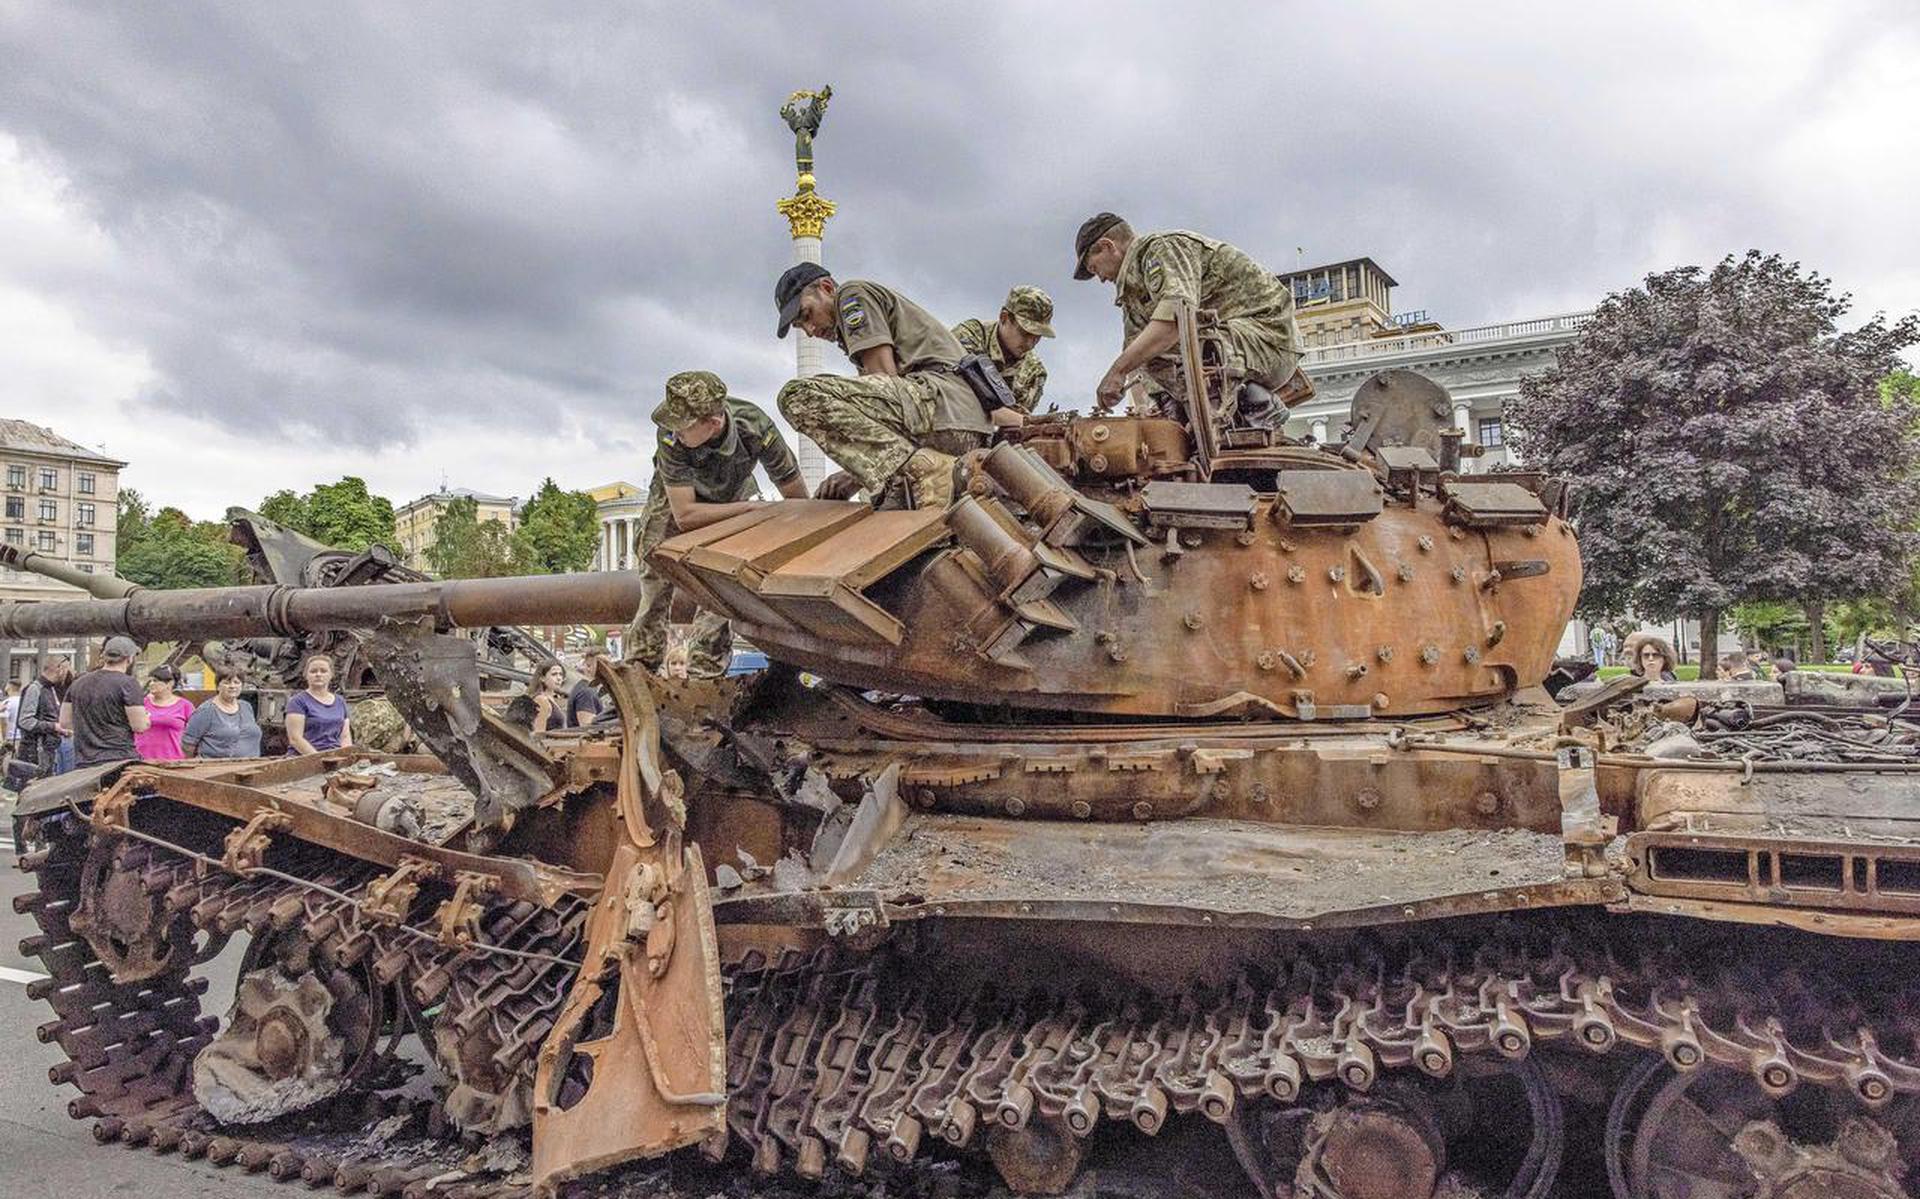 Augustus 2022: Oekraïense soldaten zitten in Kiev op een vernietigde, roestige Russische tank.